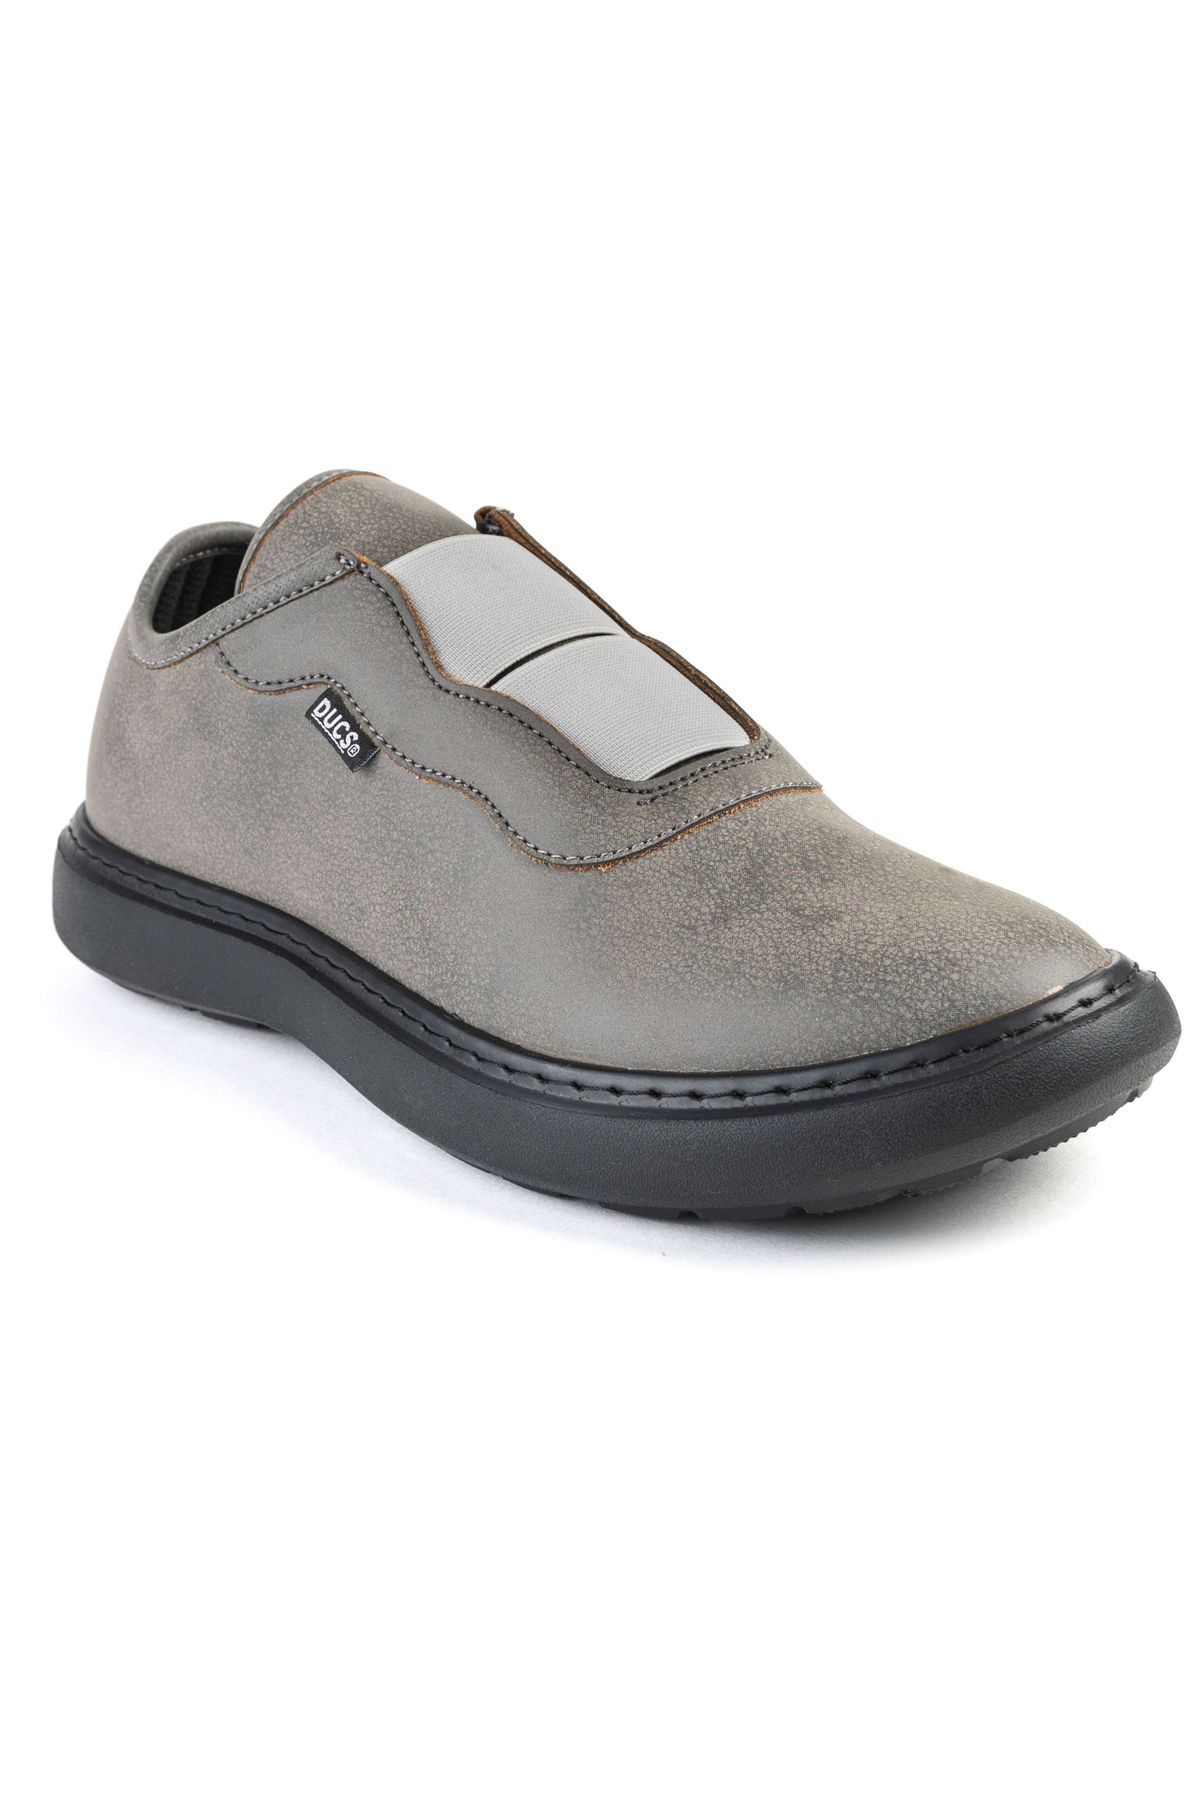 DUCS Ultra Hafif Sneaker Rahat Loafer Ayakkabı Esnek Yürüyüş Ayakkabısı Unisex Casual Ayakkabı Antrasit